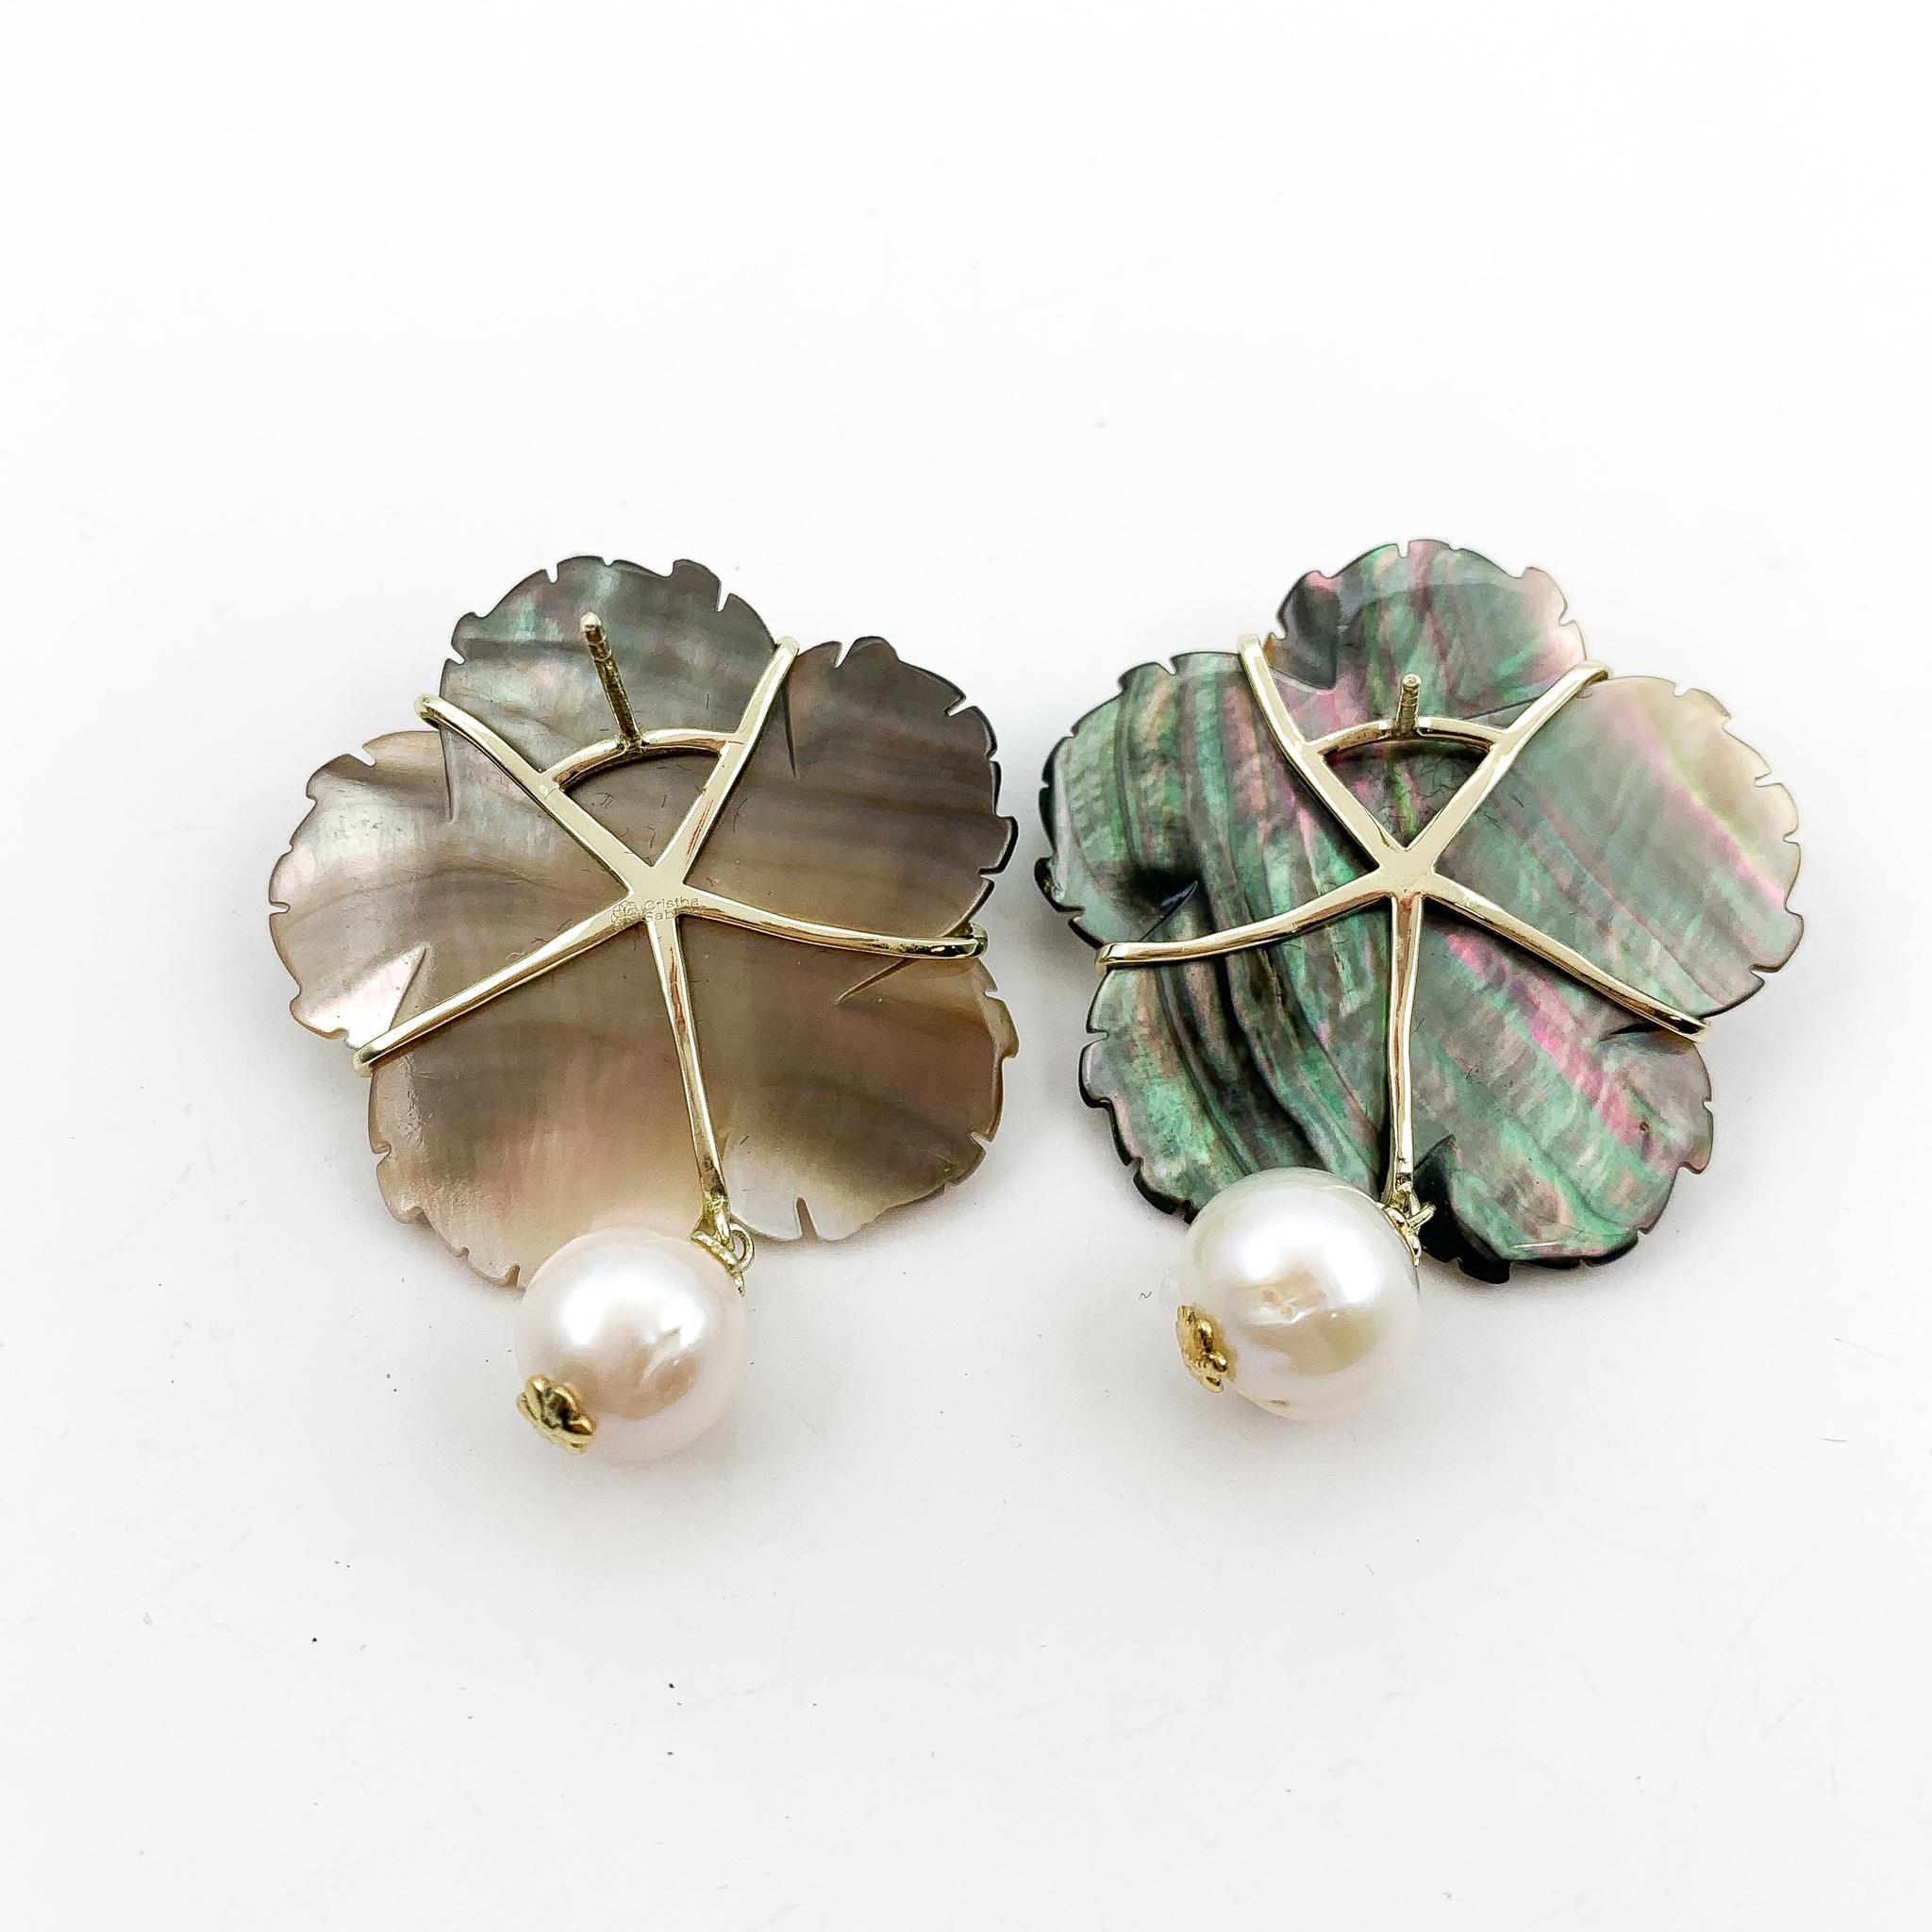 Nacre et perles d'eau douce. 
Forme florale avec pendentifs en perles. Pierres précieuses naturelles. 
Or 18K sur bronze. 
1,75 pouces de longueur